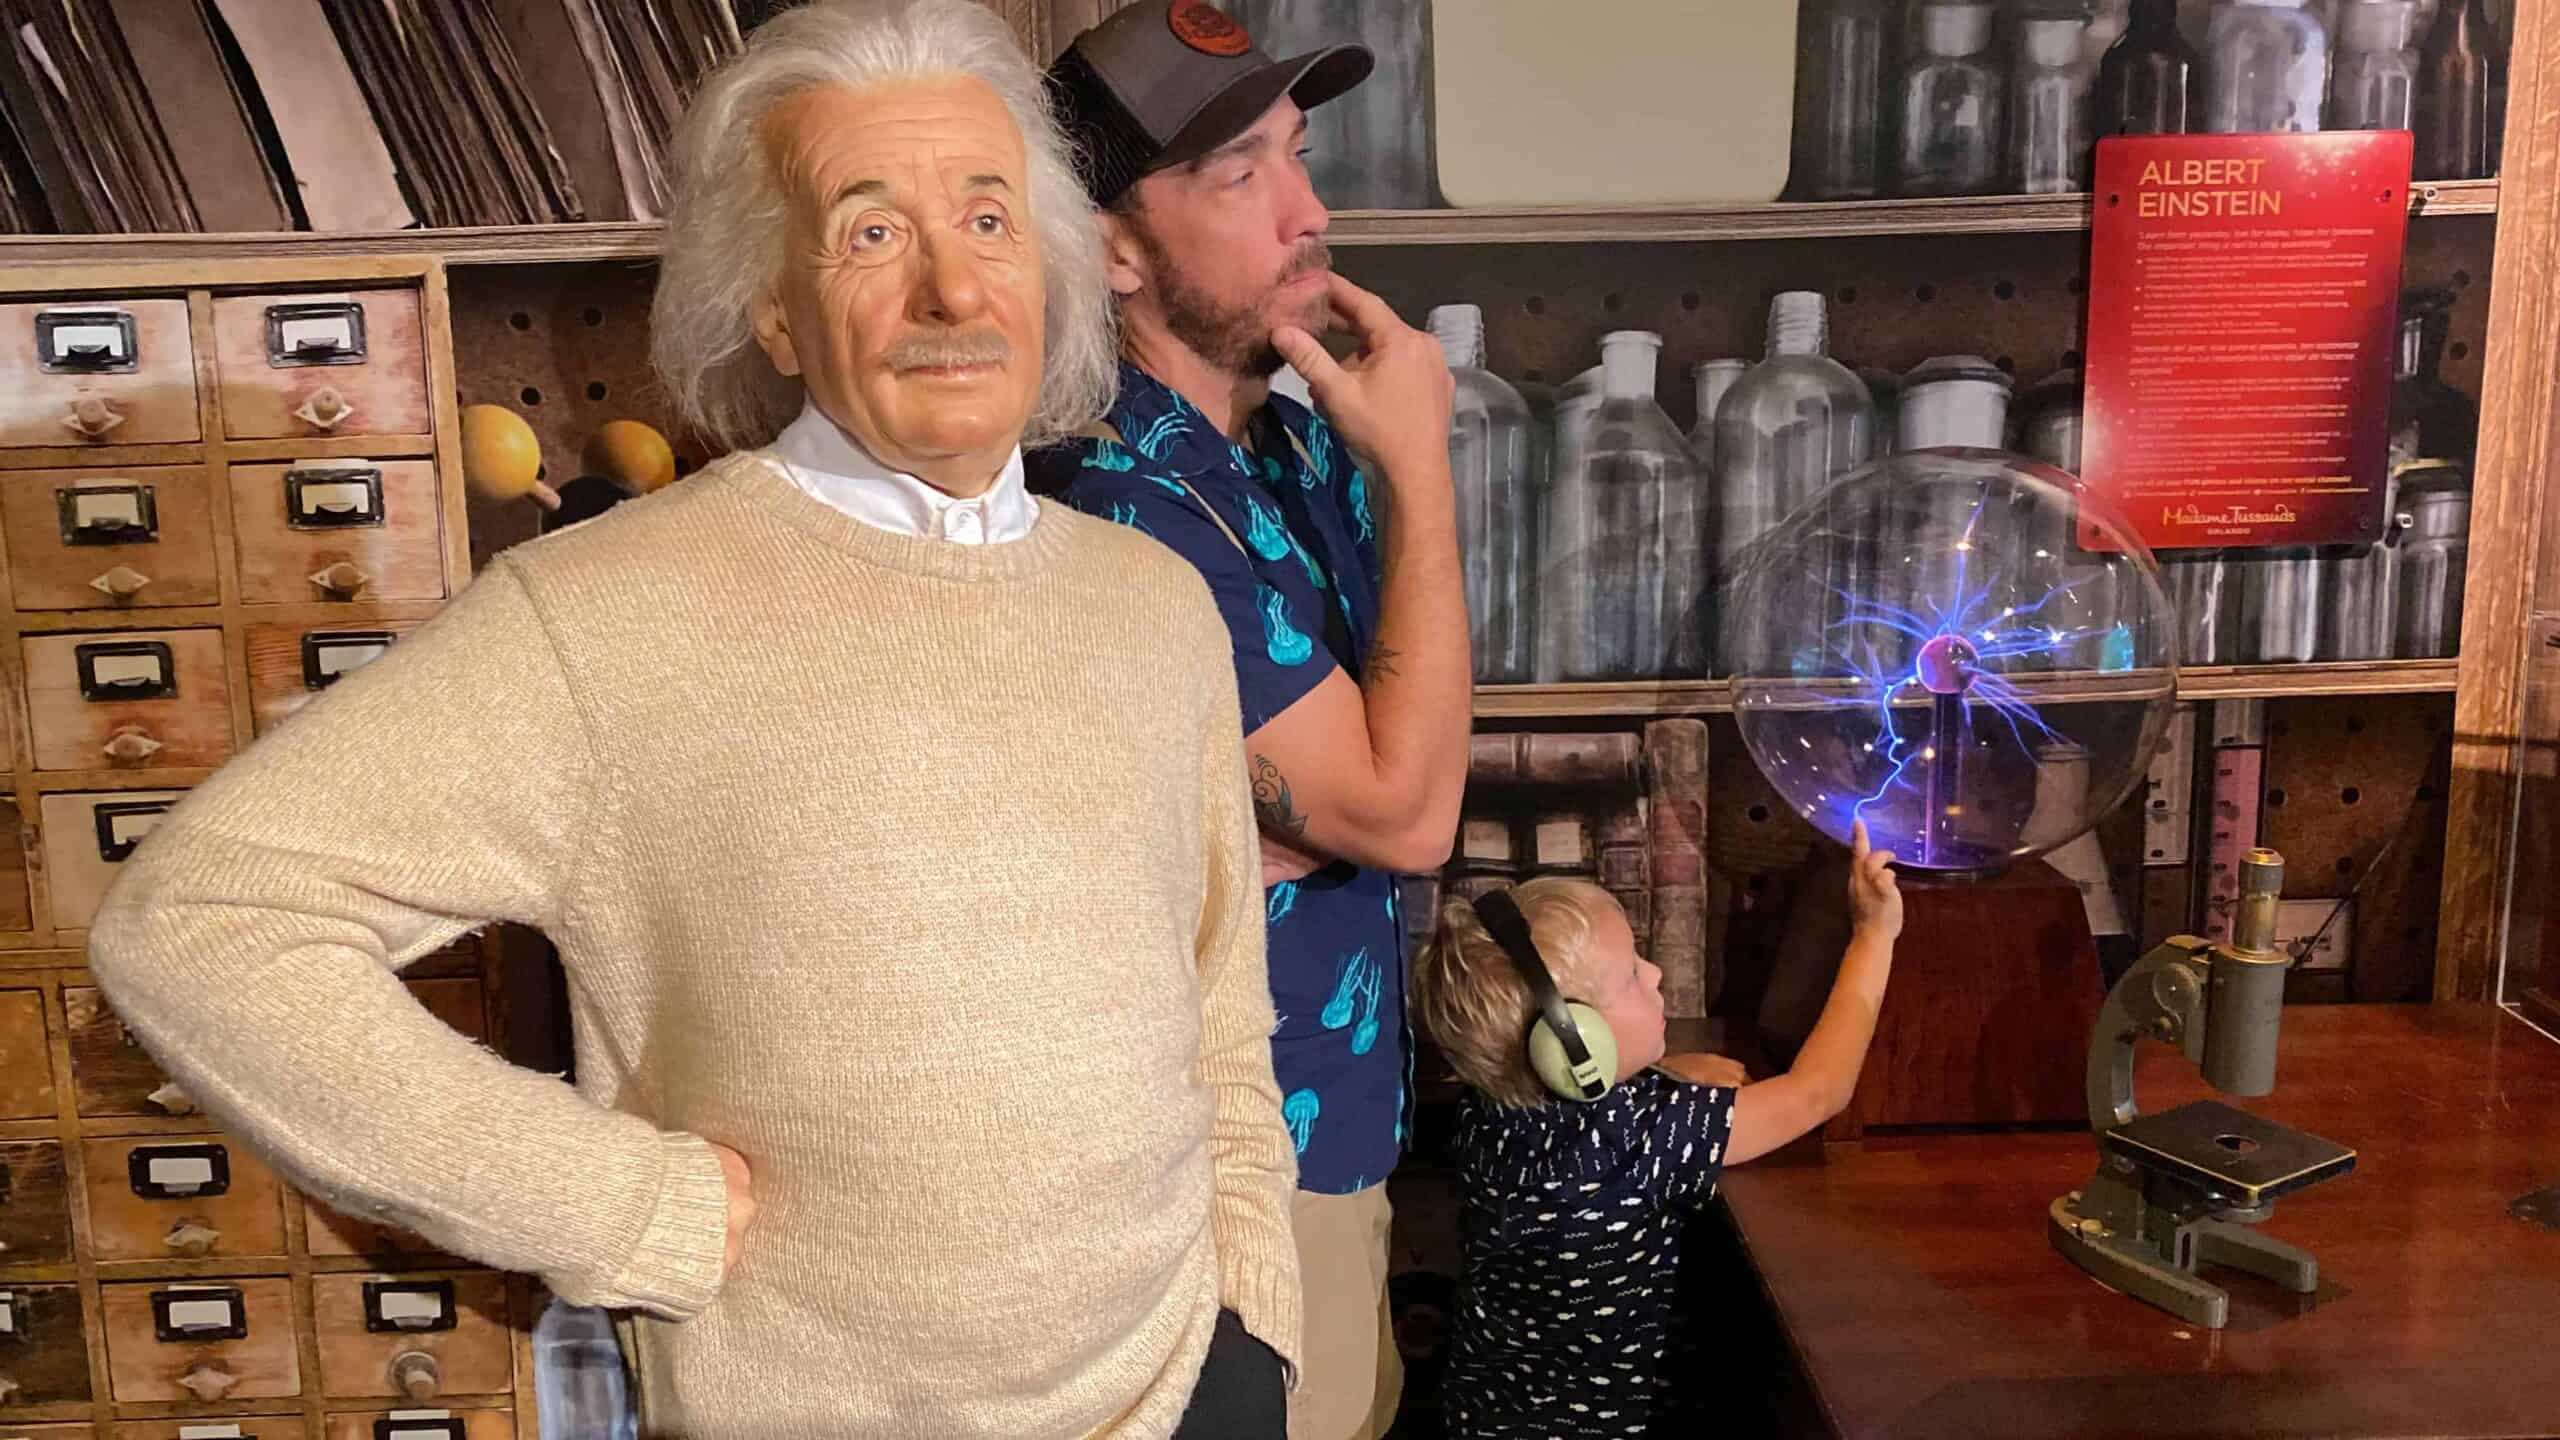 Madame Tussaud's Orlando - Albert Einstein Figure